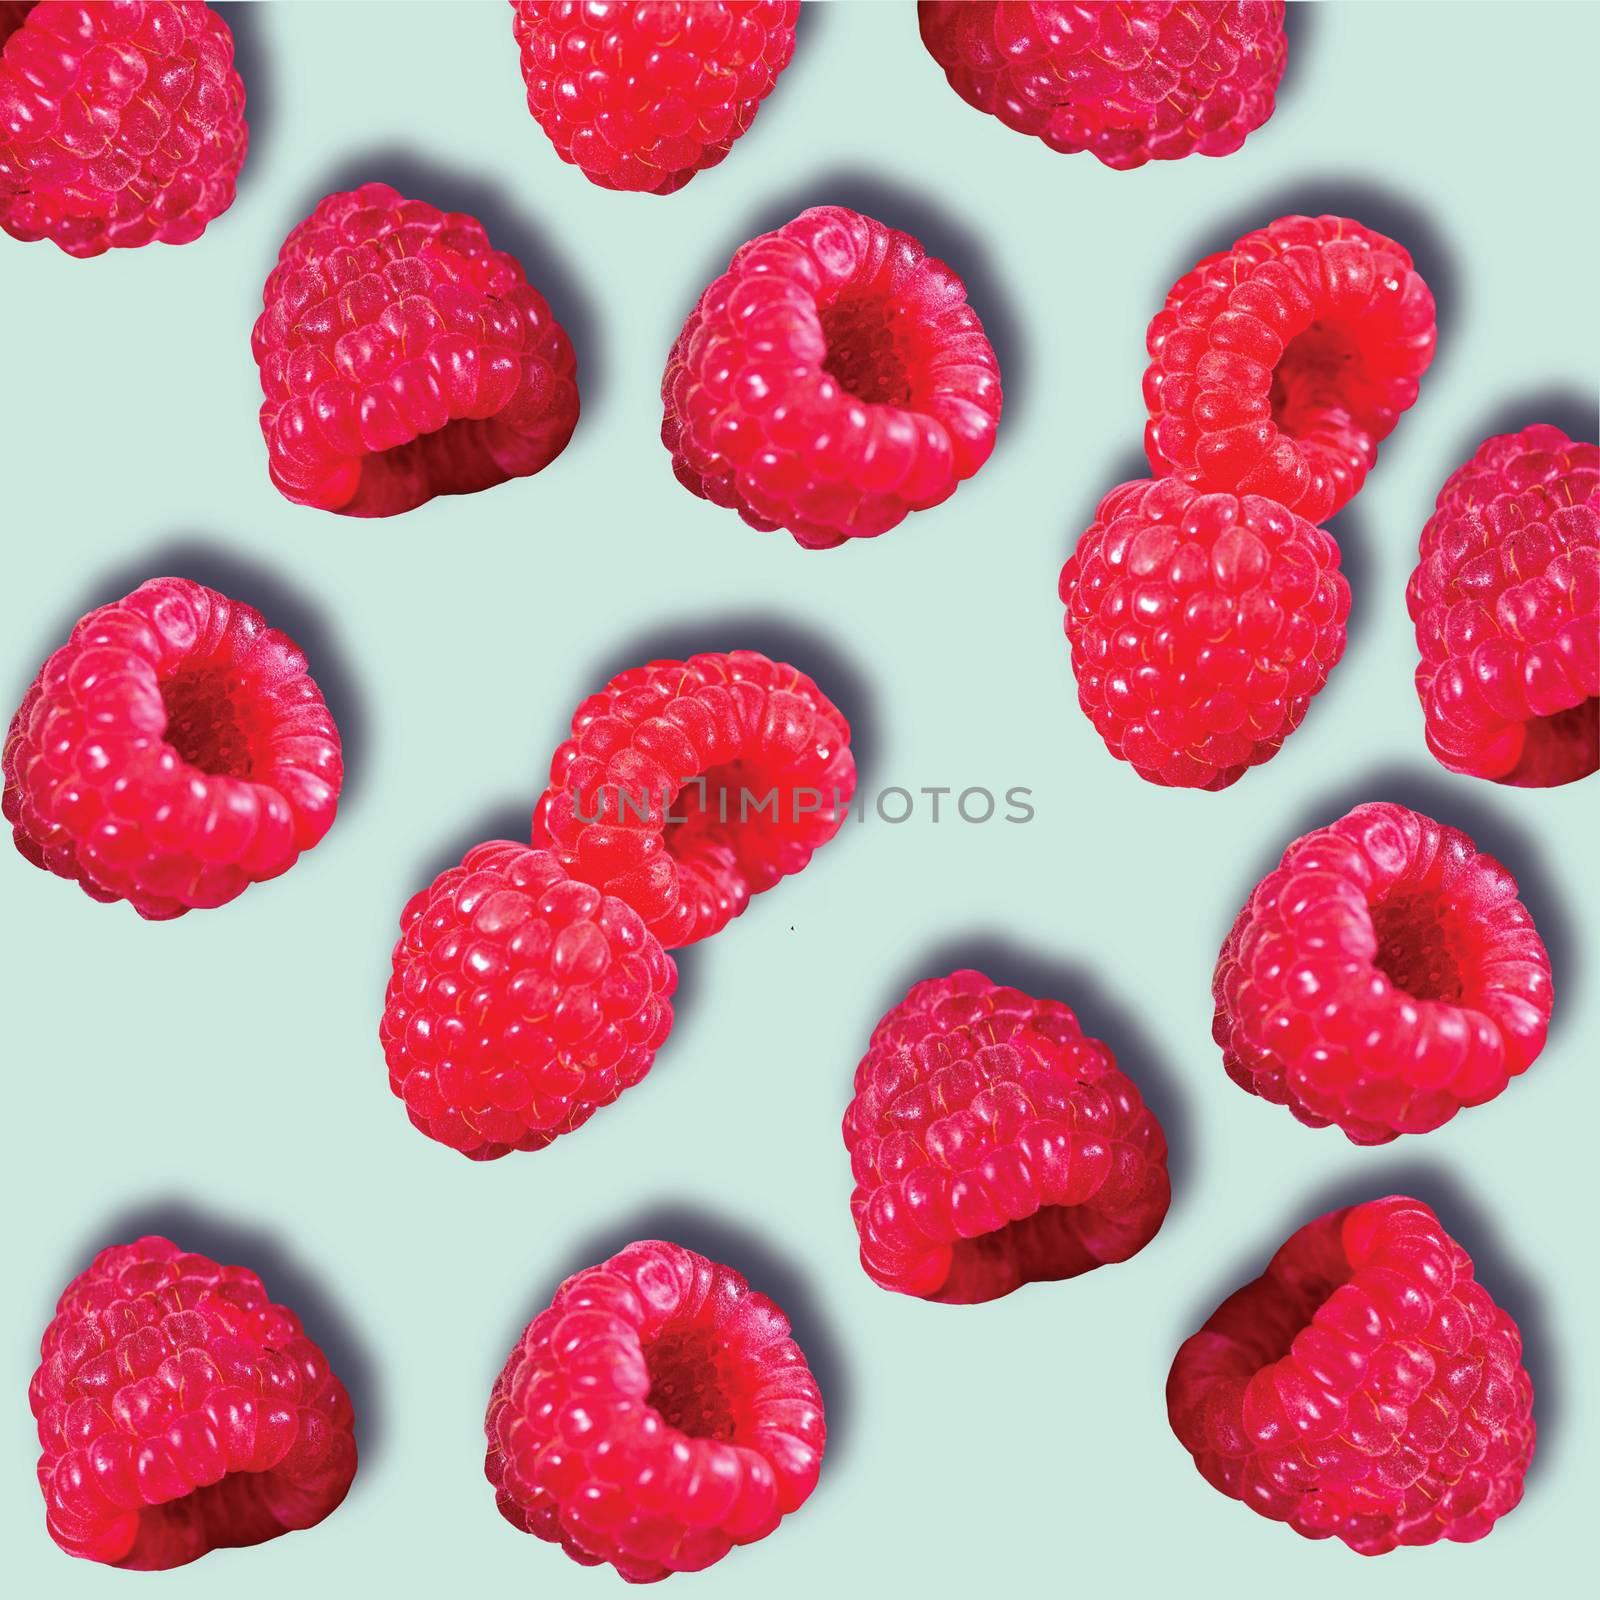 Pattern of Raspberries sweet organic juicy berries on blue background. Flat lay, top view.